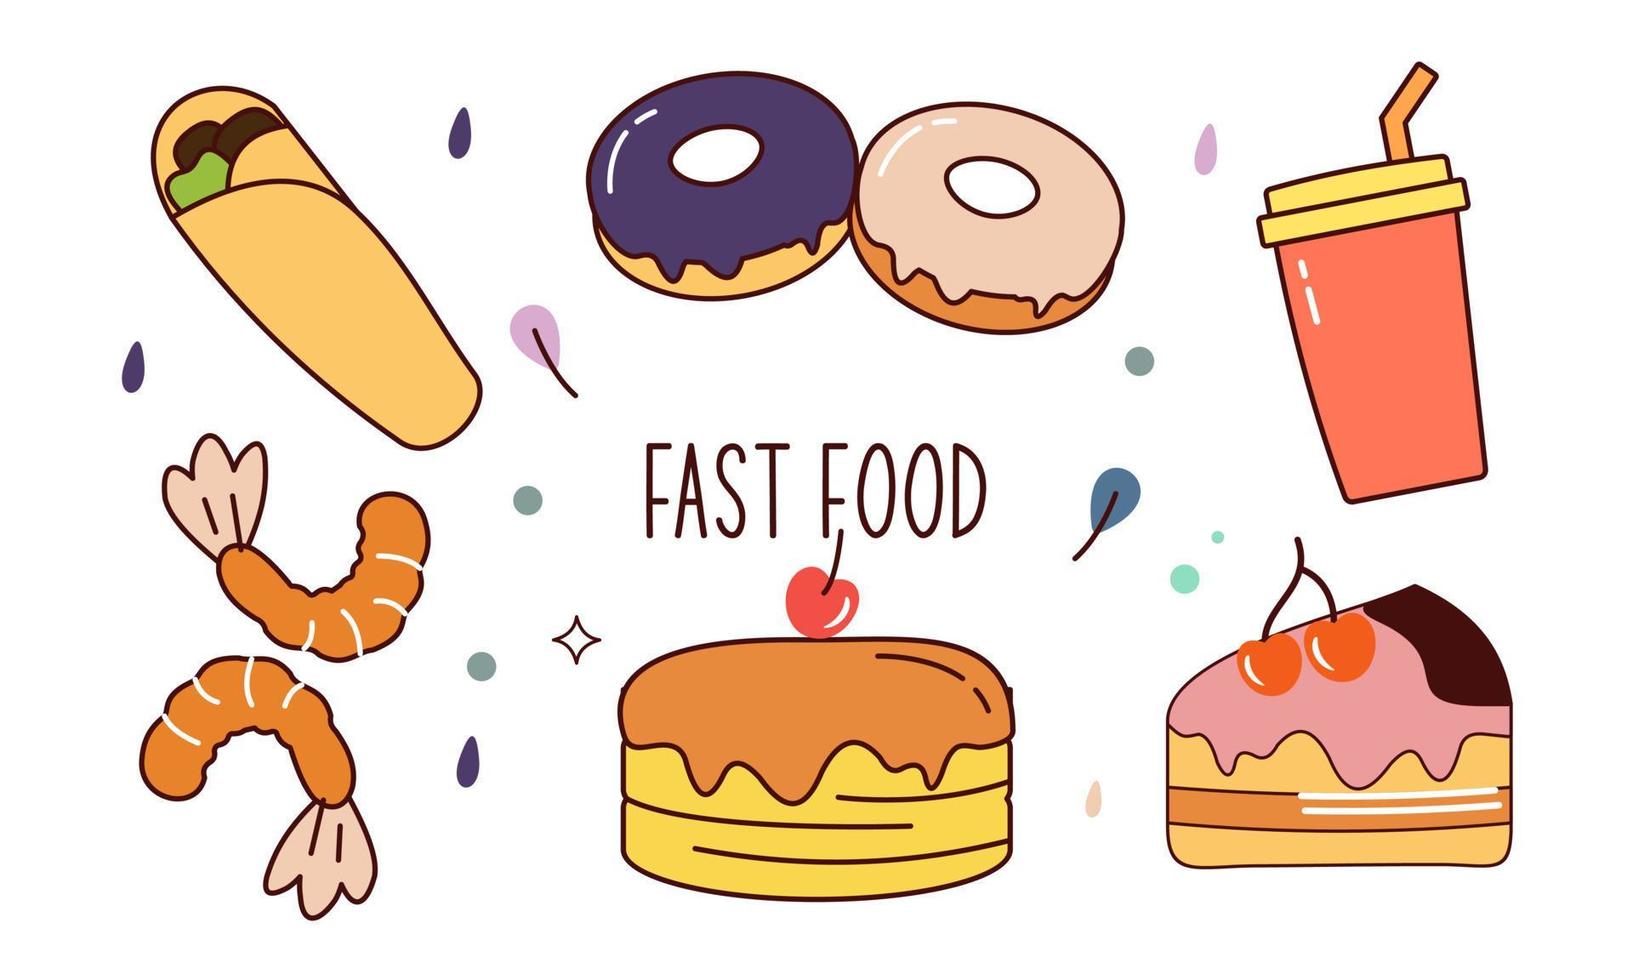 comida rápida doodle elementos de objeto de estilo de arte de línea dibujado a mano vector